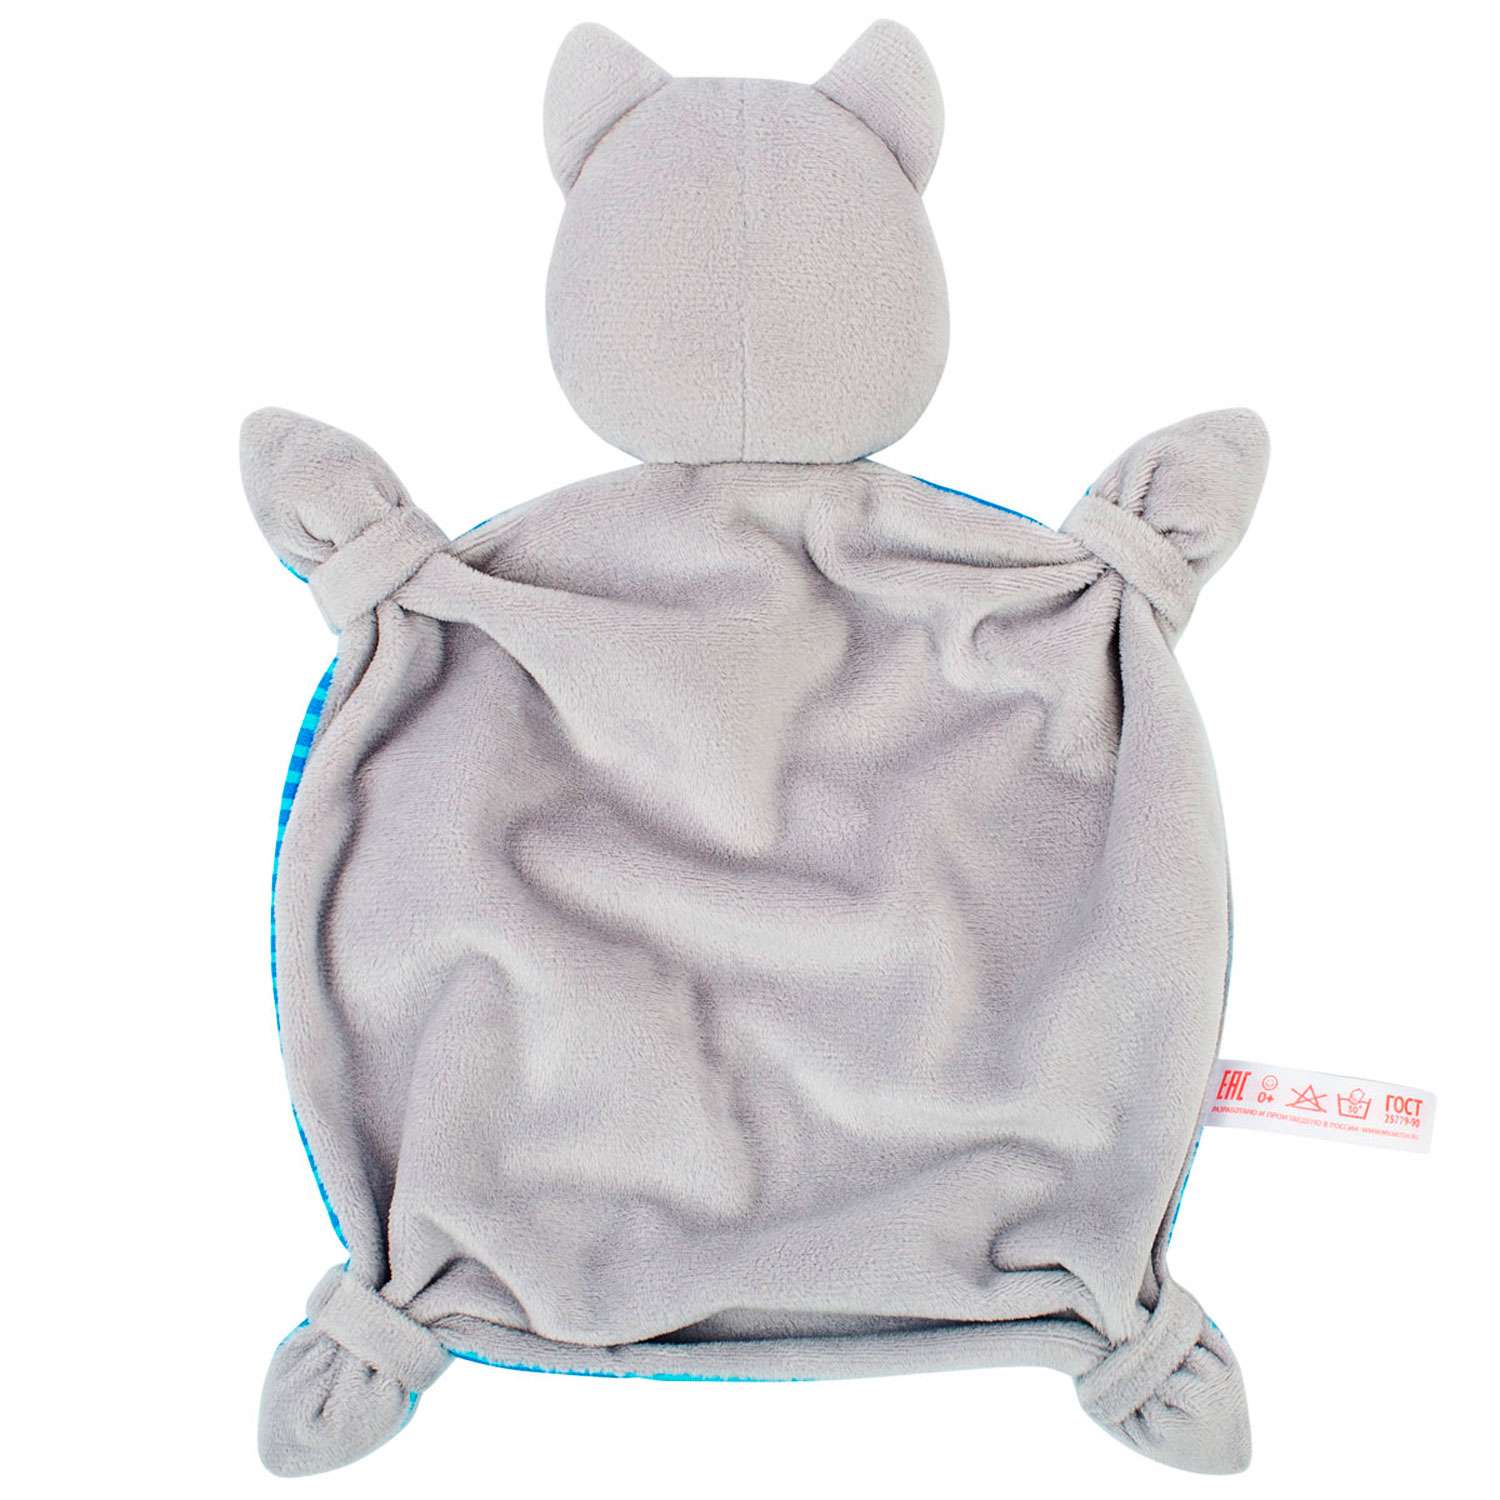 Игрушка комфортер Мякиши мягкая игрушка Котёнок Кекс для сна новорождённых обнимашка подарок - фото 3